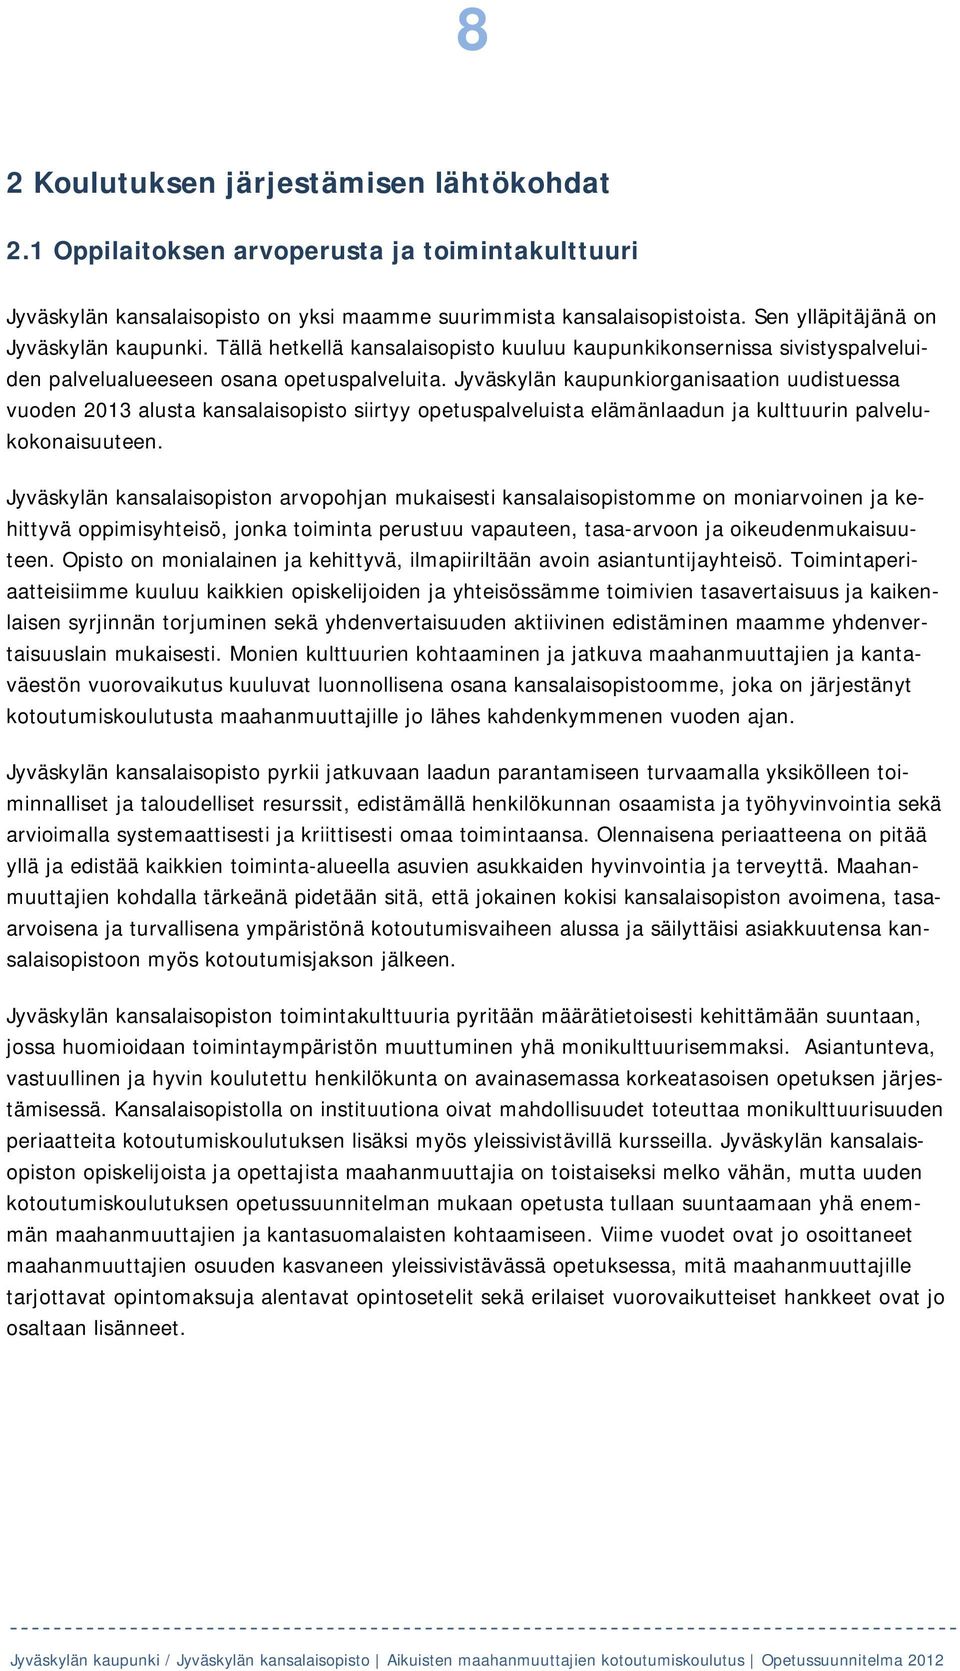 Jyväskylän kaupunkiorganisaation uudistuessa vuoden 2013 alusta kansalaisopisto siirtyy opetuspalveluista elämänlaadun ja kulttuurin palvelukokonaisuuteen.